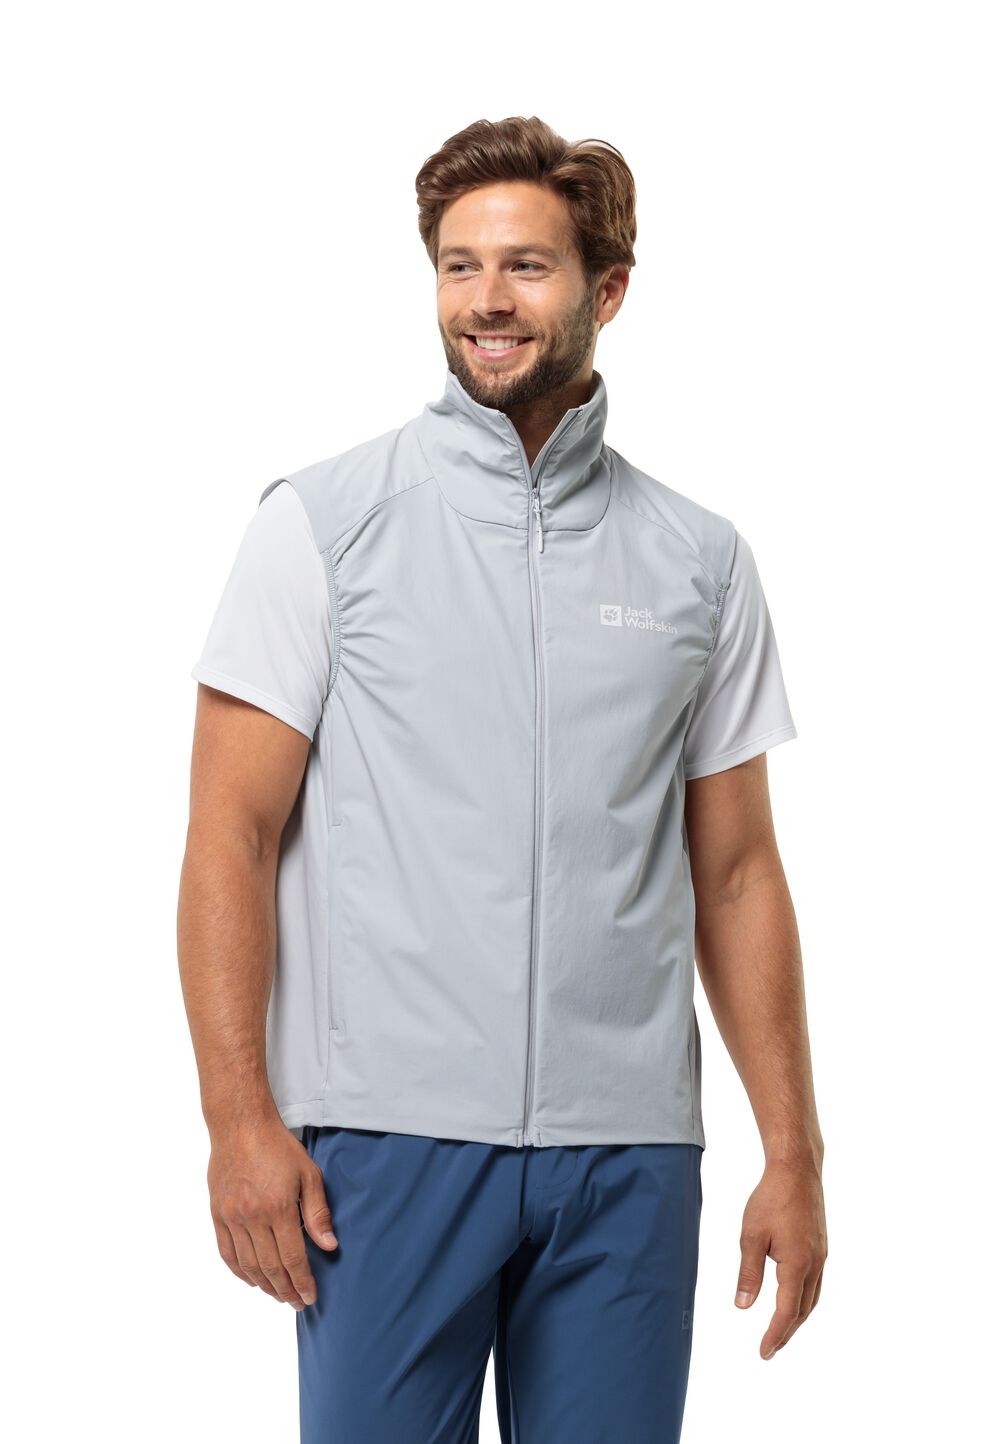 Jack Wolfskin Prelight Vest Men Outdoor-bodywarmer Heren XL grijs cool grey